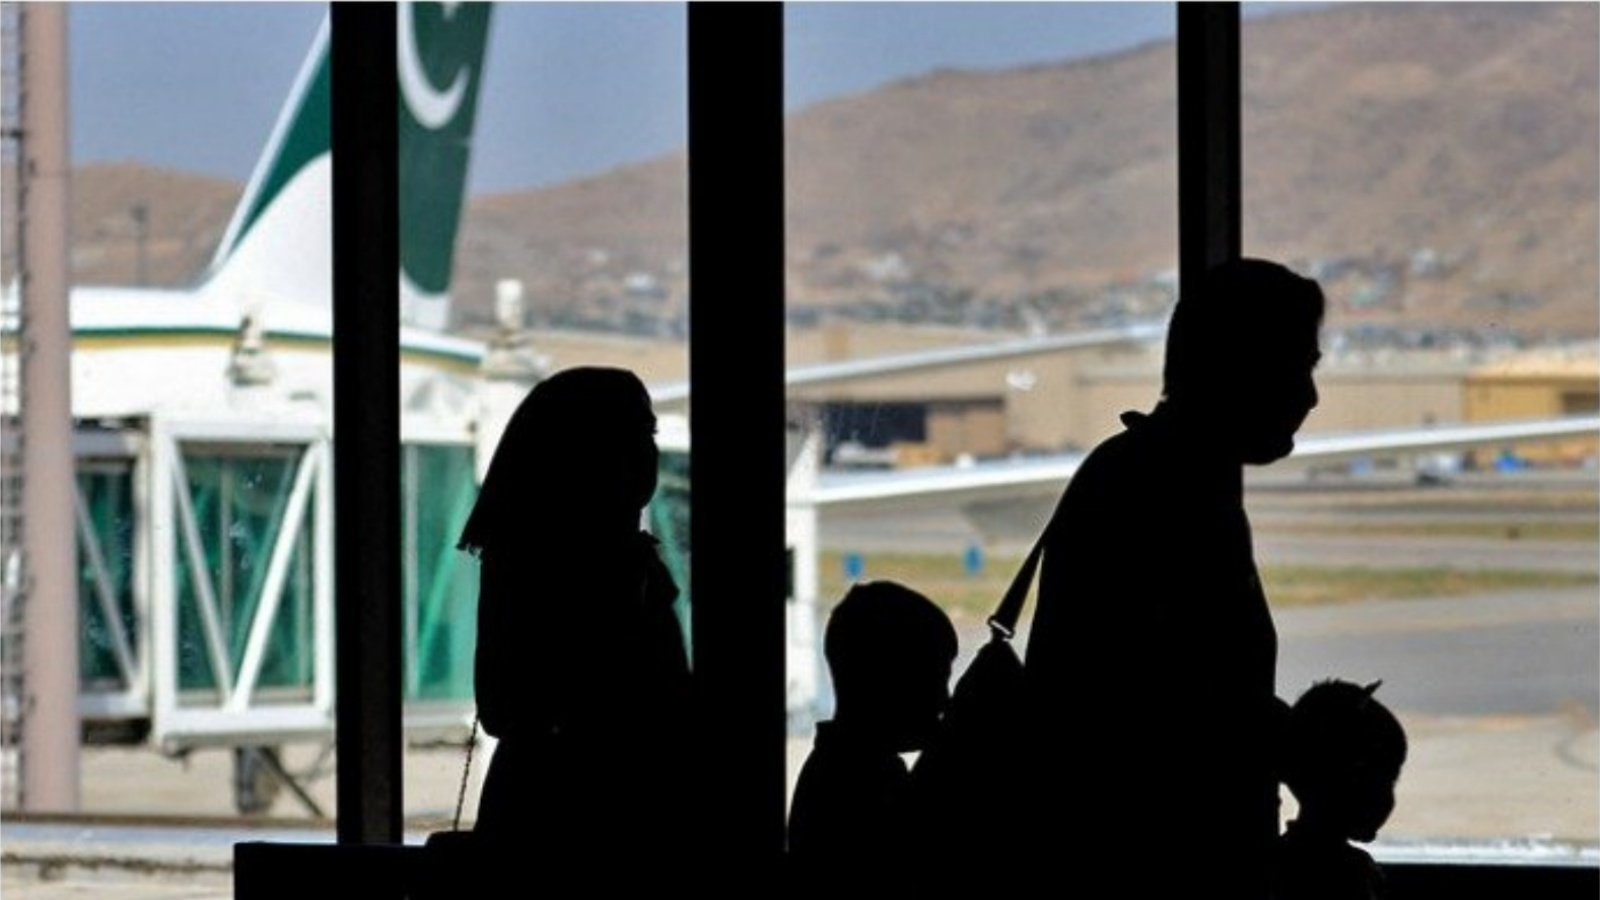 ركاب يغادرون على متن طائرة تابعة للخطوط الجوية الباكستانية في مطار كابول، أفغانستان. في 13 أيلول/سبتمبر 2021.